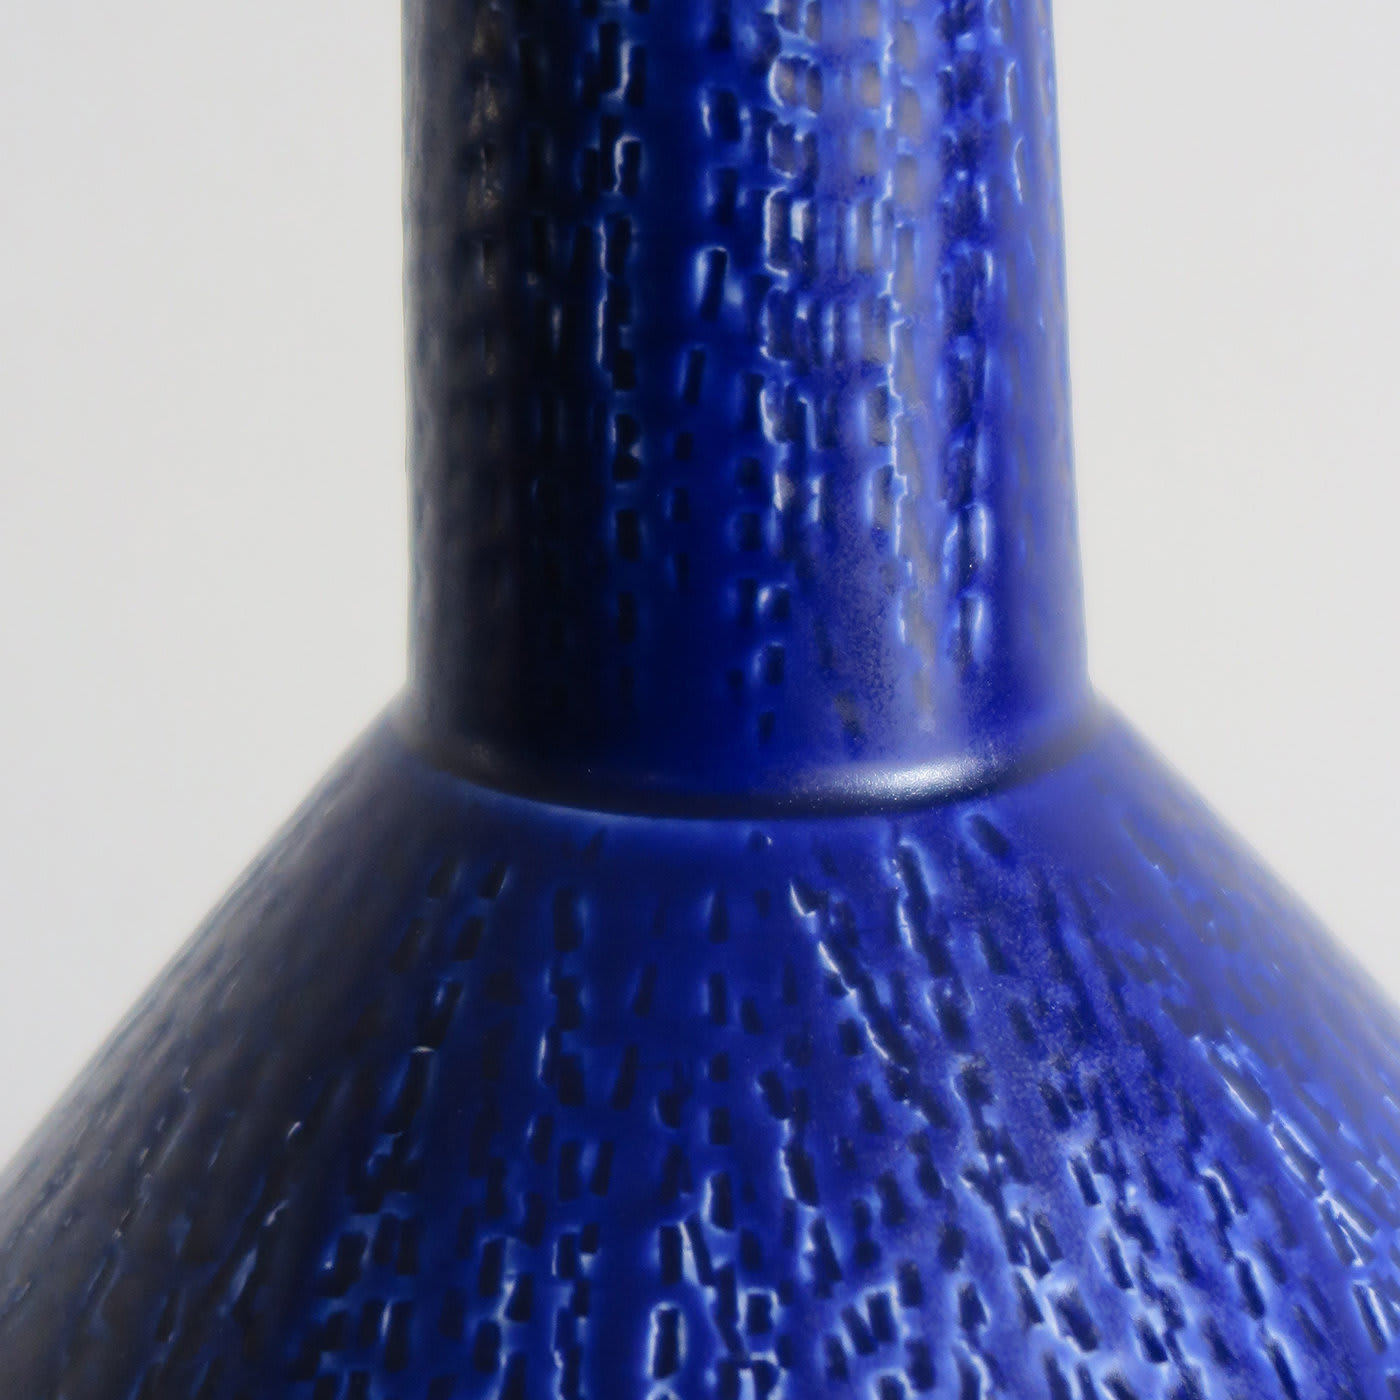 Blue Vase in Wood and Ceramics - Capperidicasa